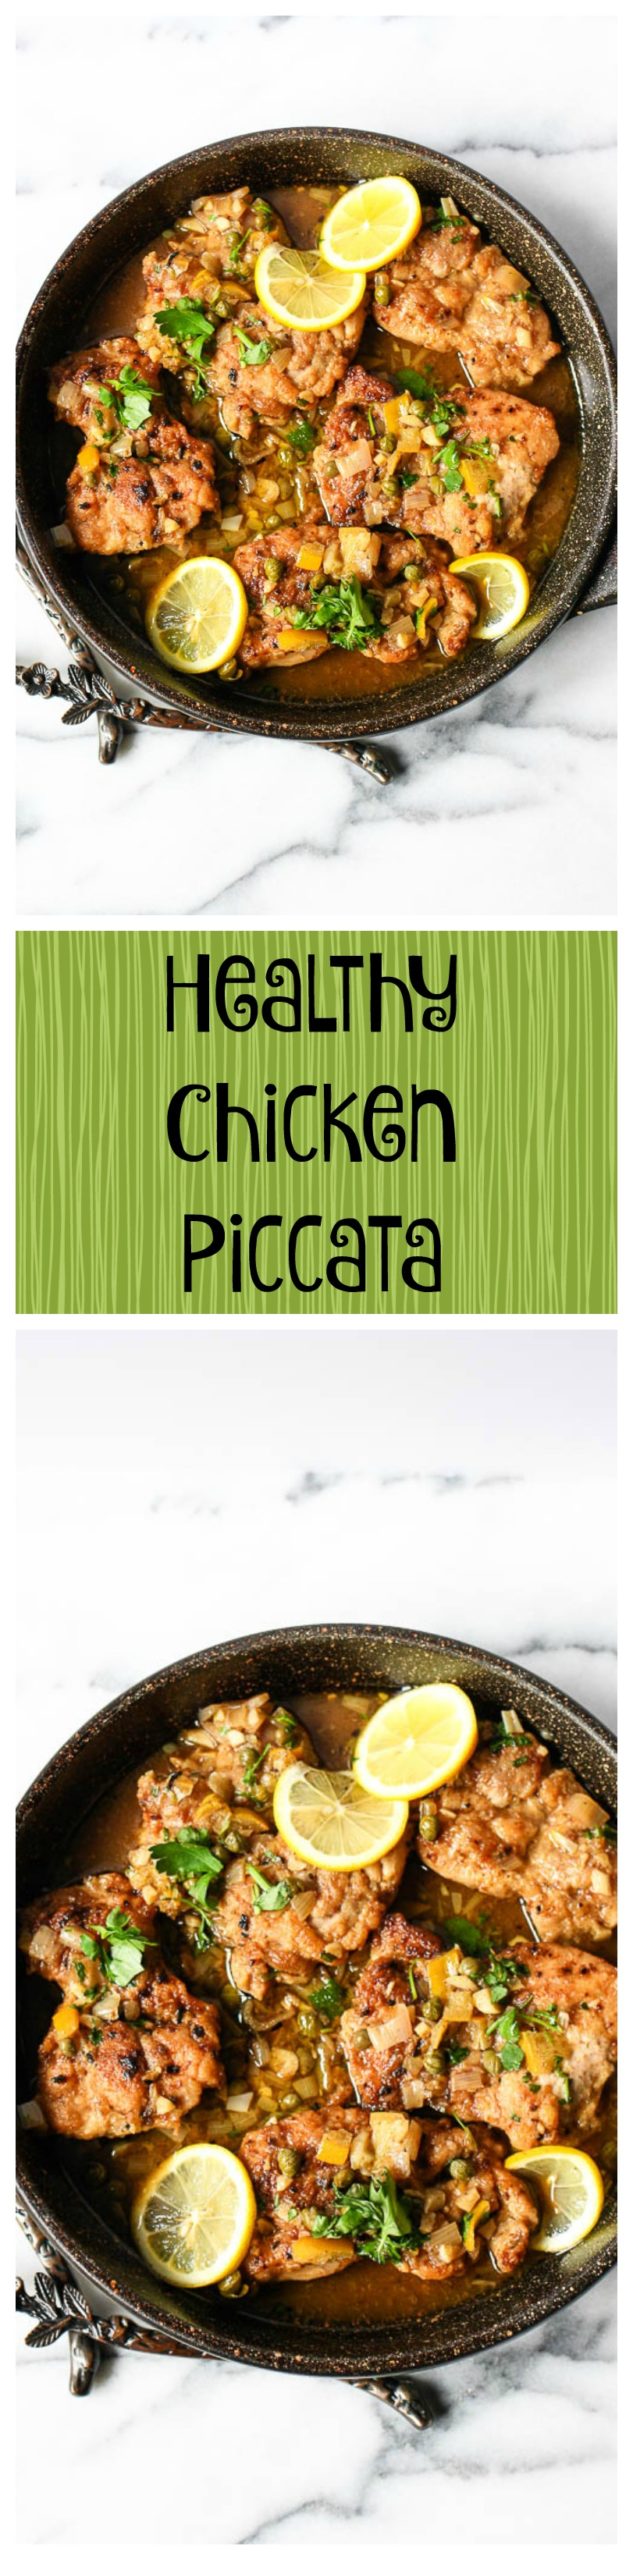 healthy chicken piccata